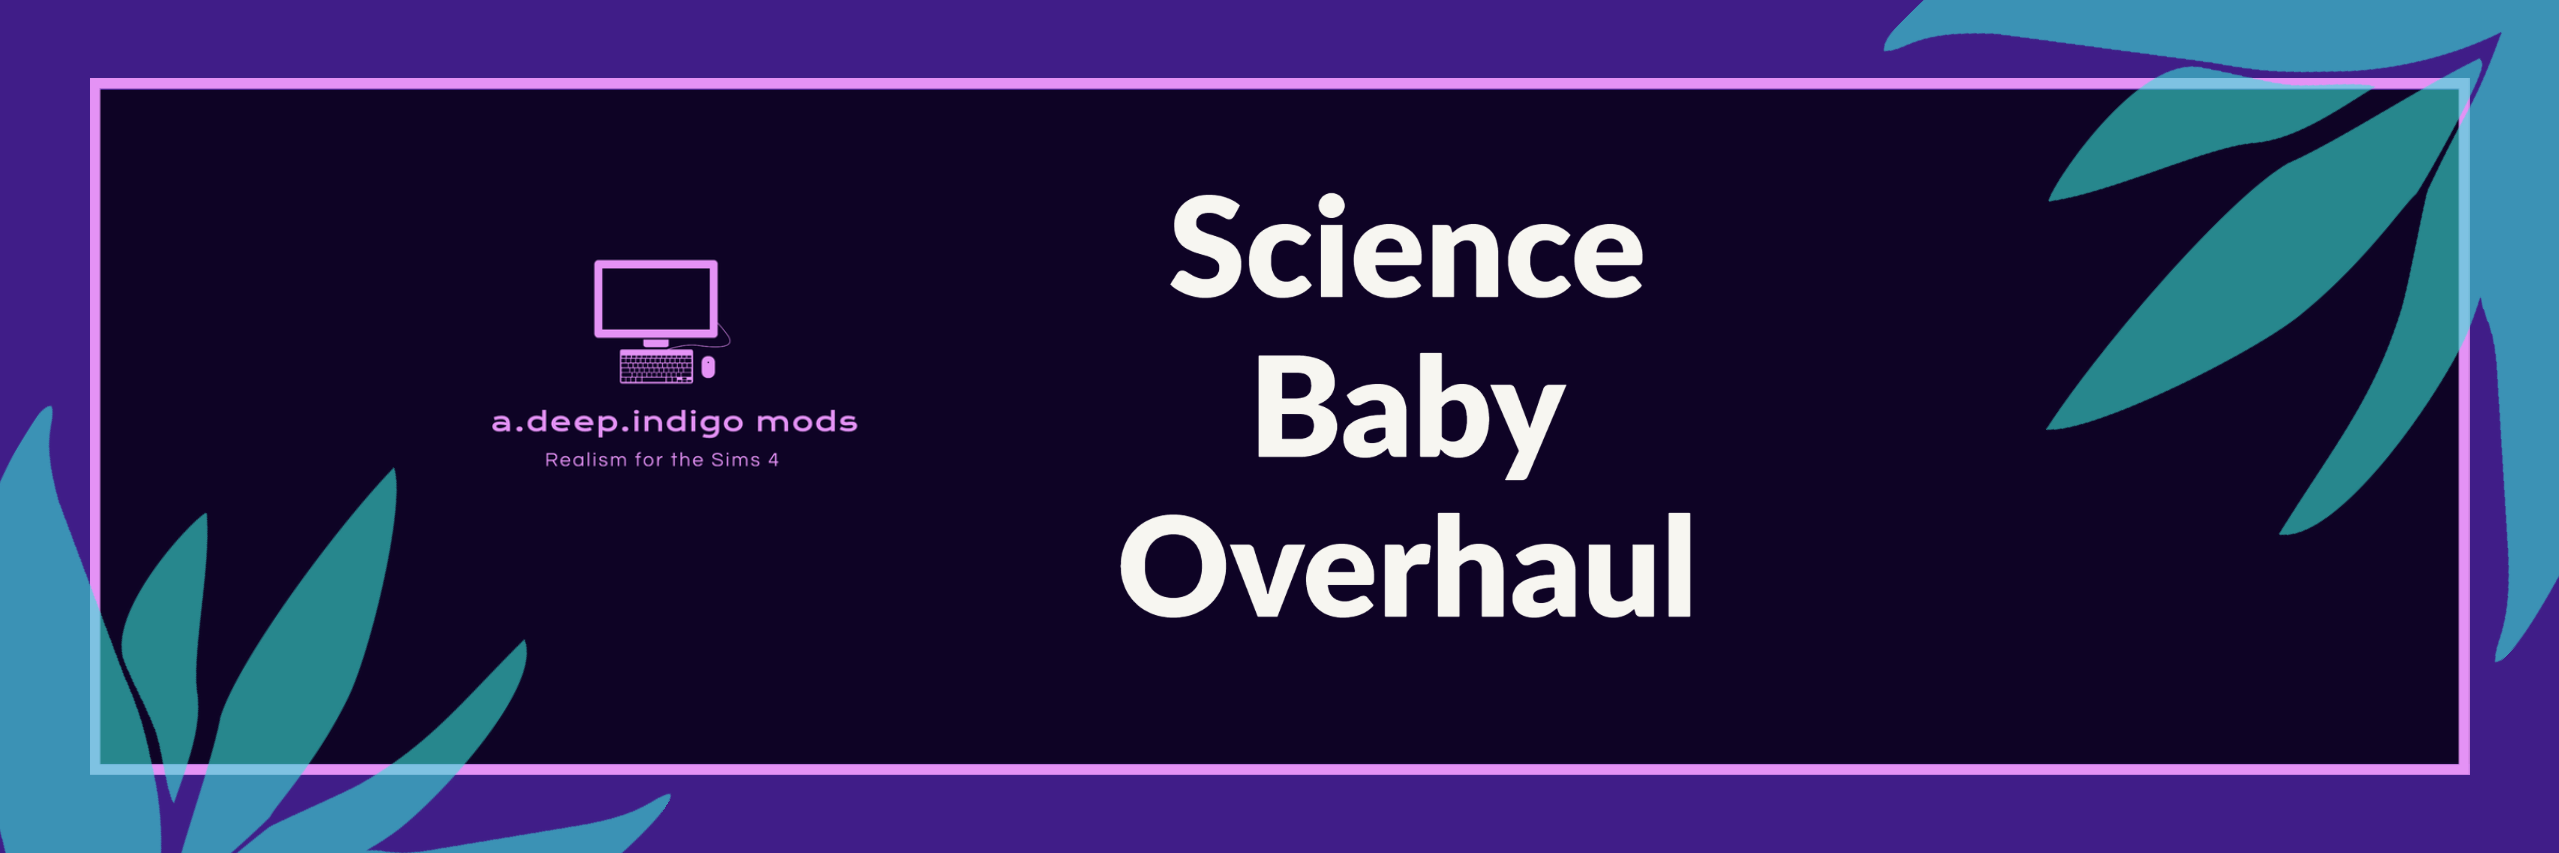 Science Baby Overhaul